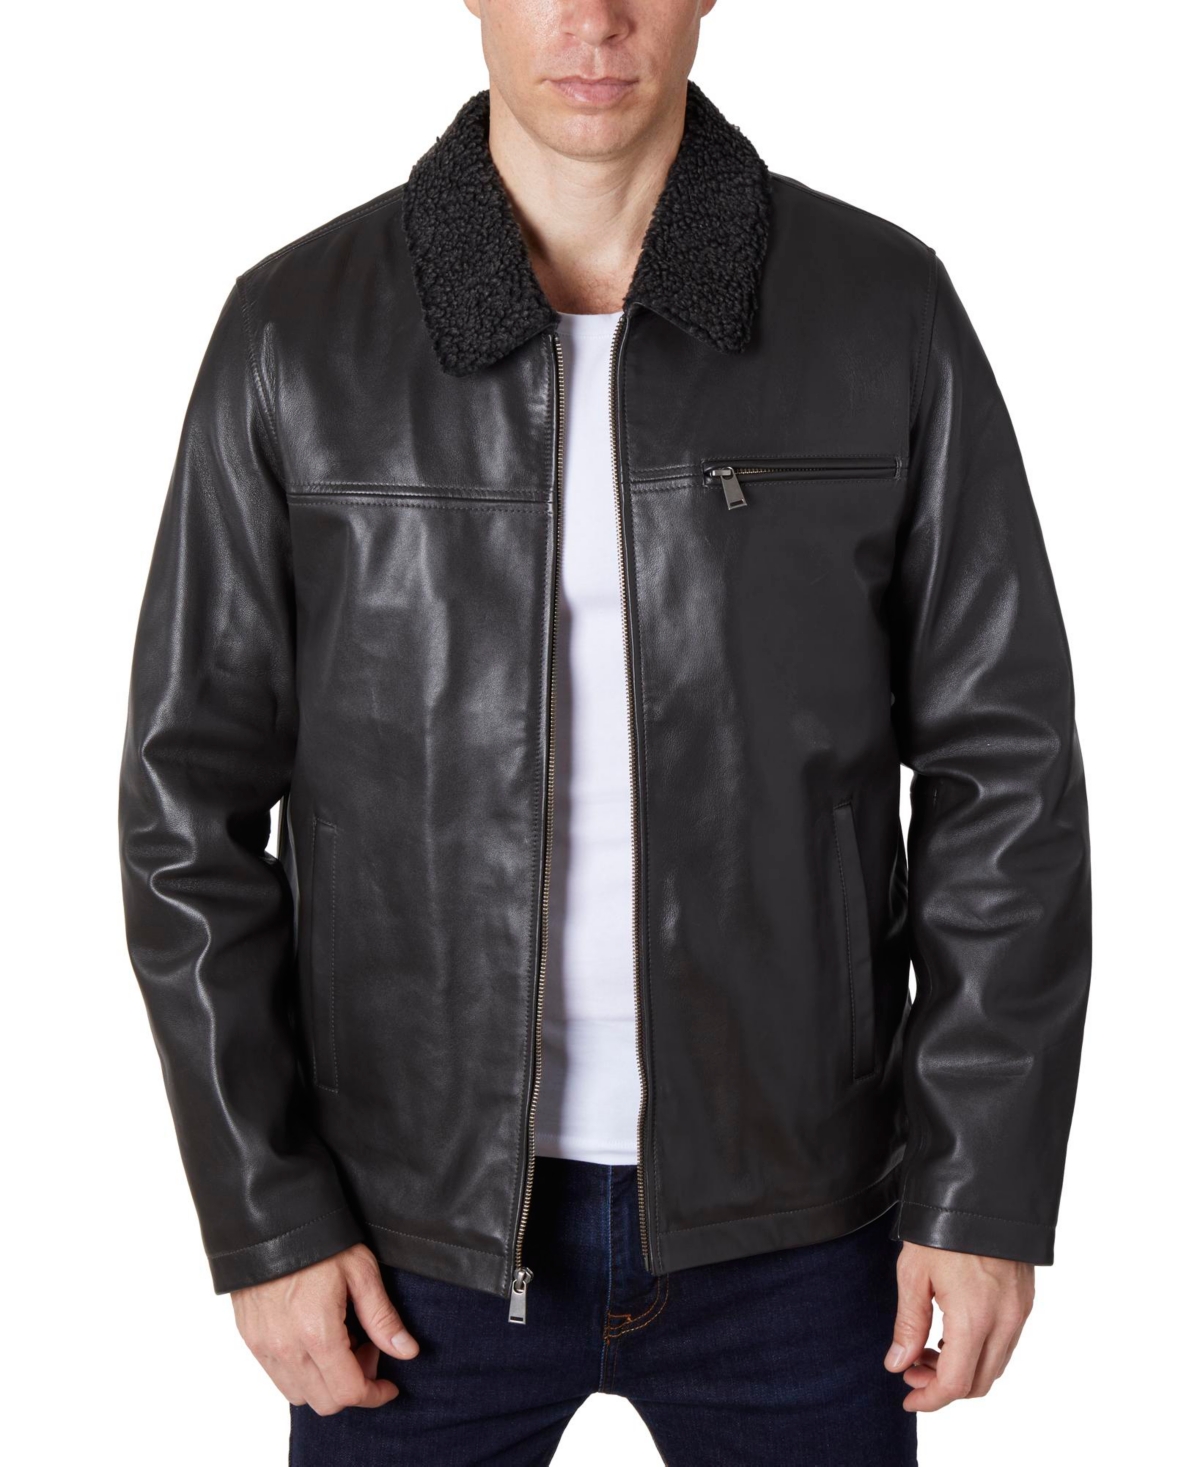 Men's Zipper Leather Jacket - Brown